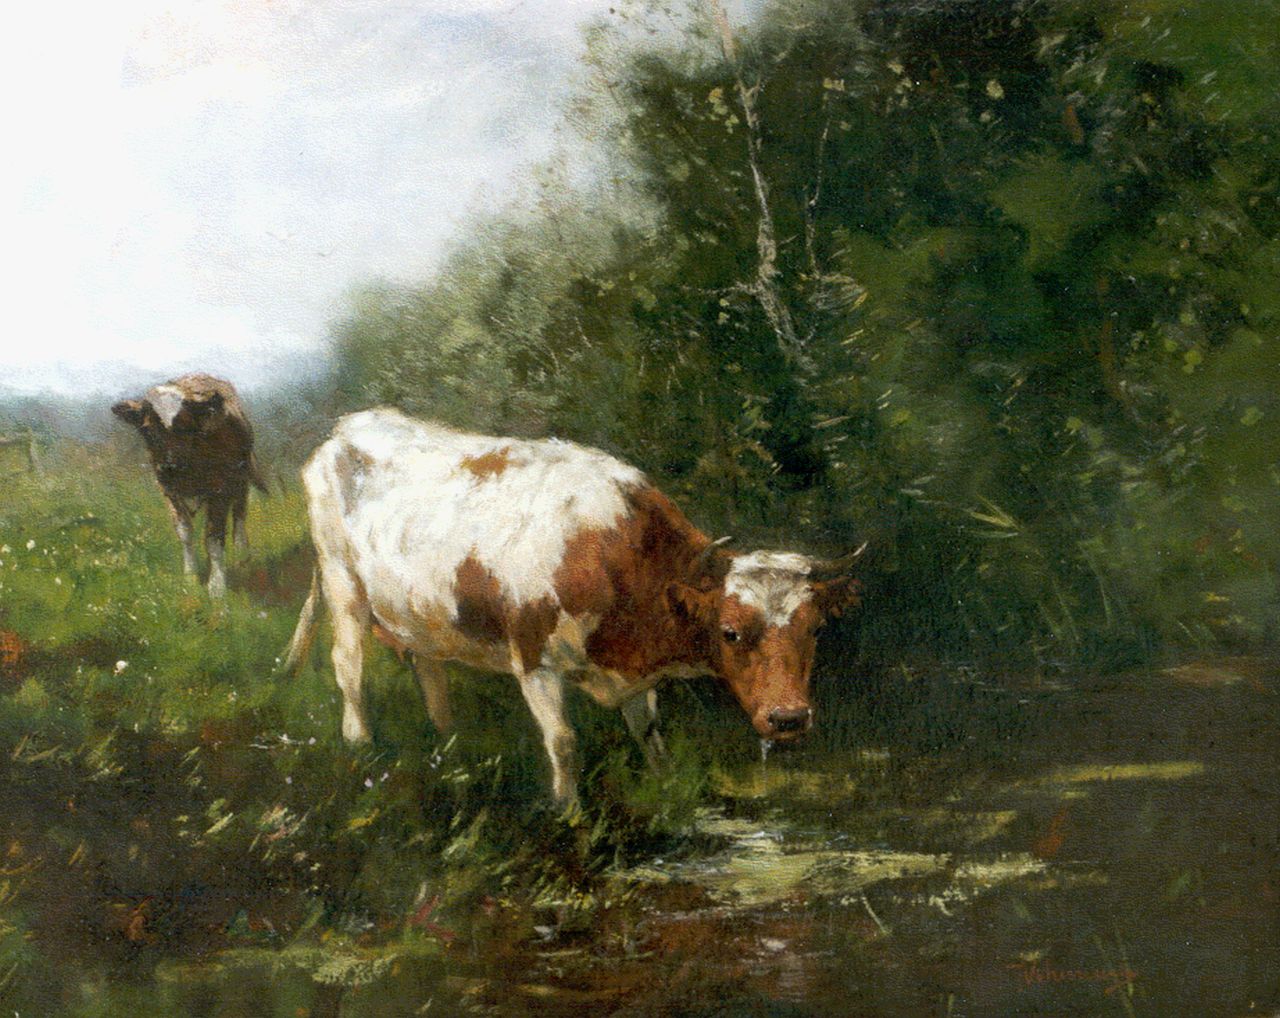 Scherrewitz J.F.C.  | Johan Frederik Cornelis Scherrewitz, Cows on the riverbank, oil on canvas 40.0 x 50.2 cm, signed l.r.